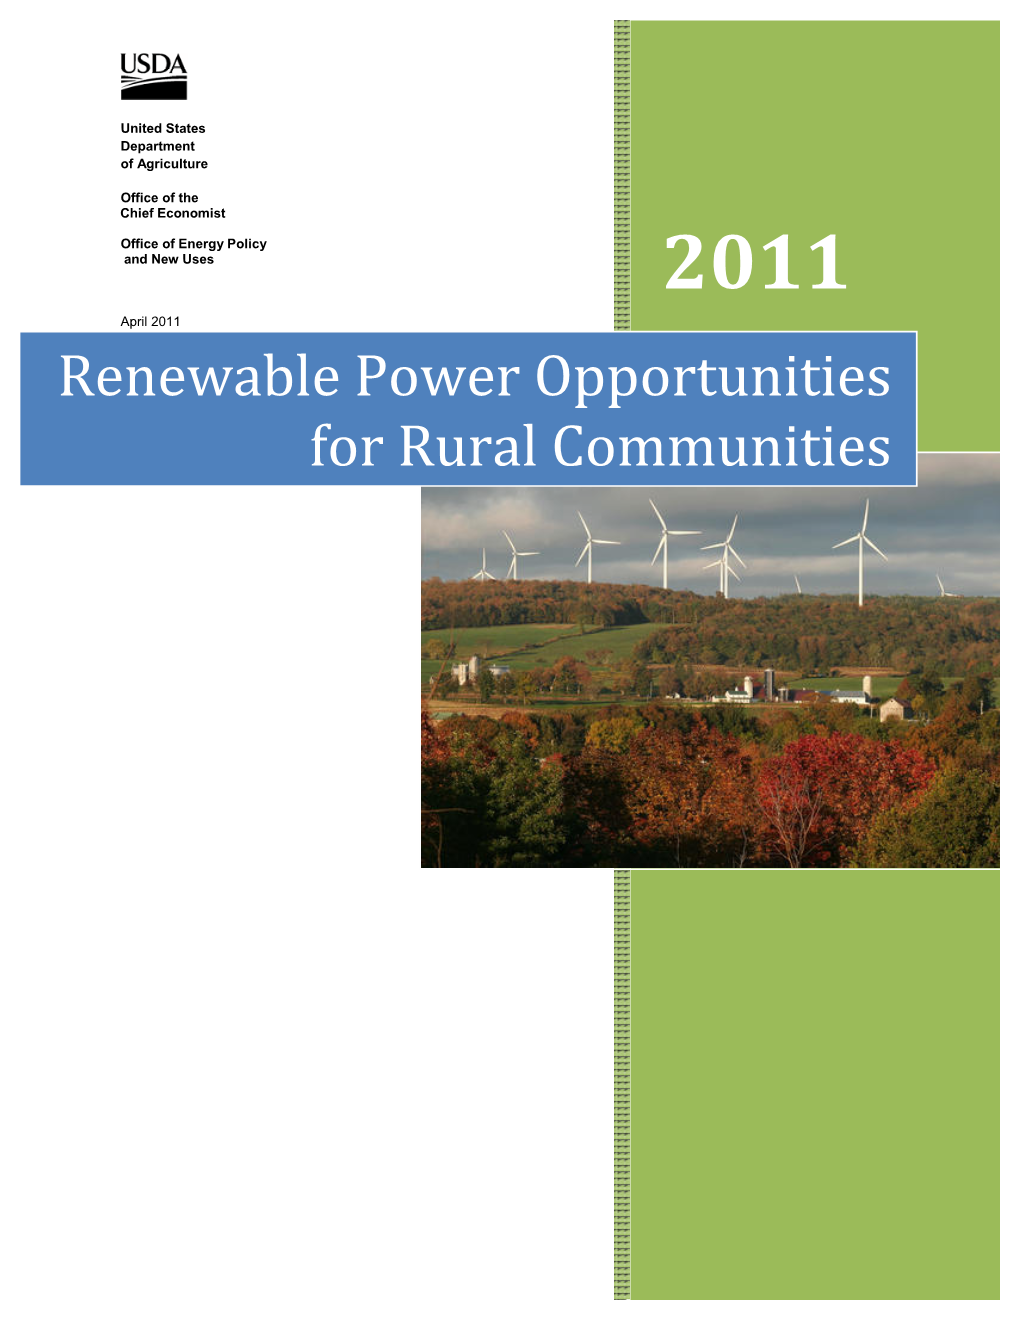 Renewable Power Opportunities for Rural Communities